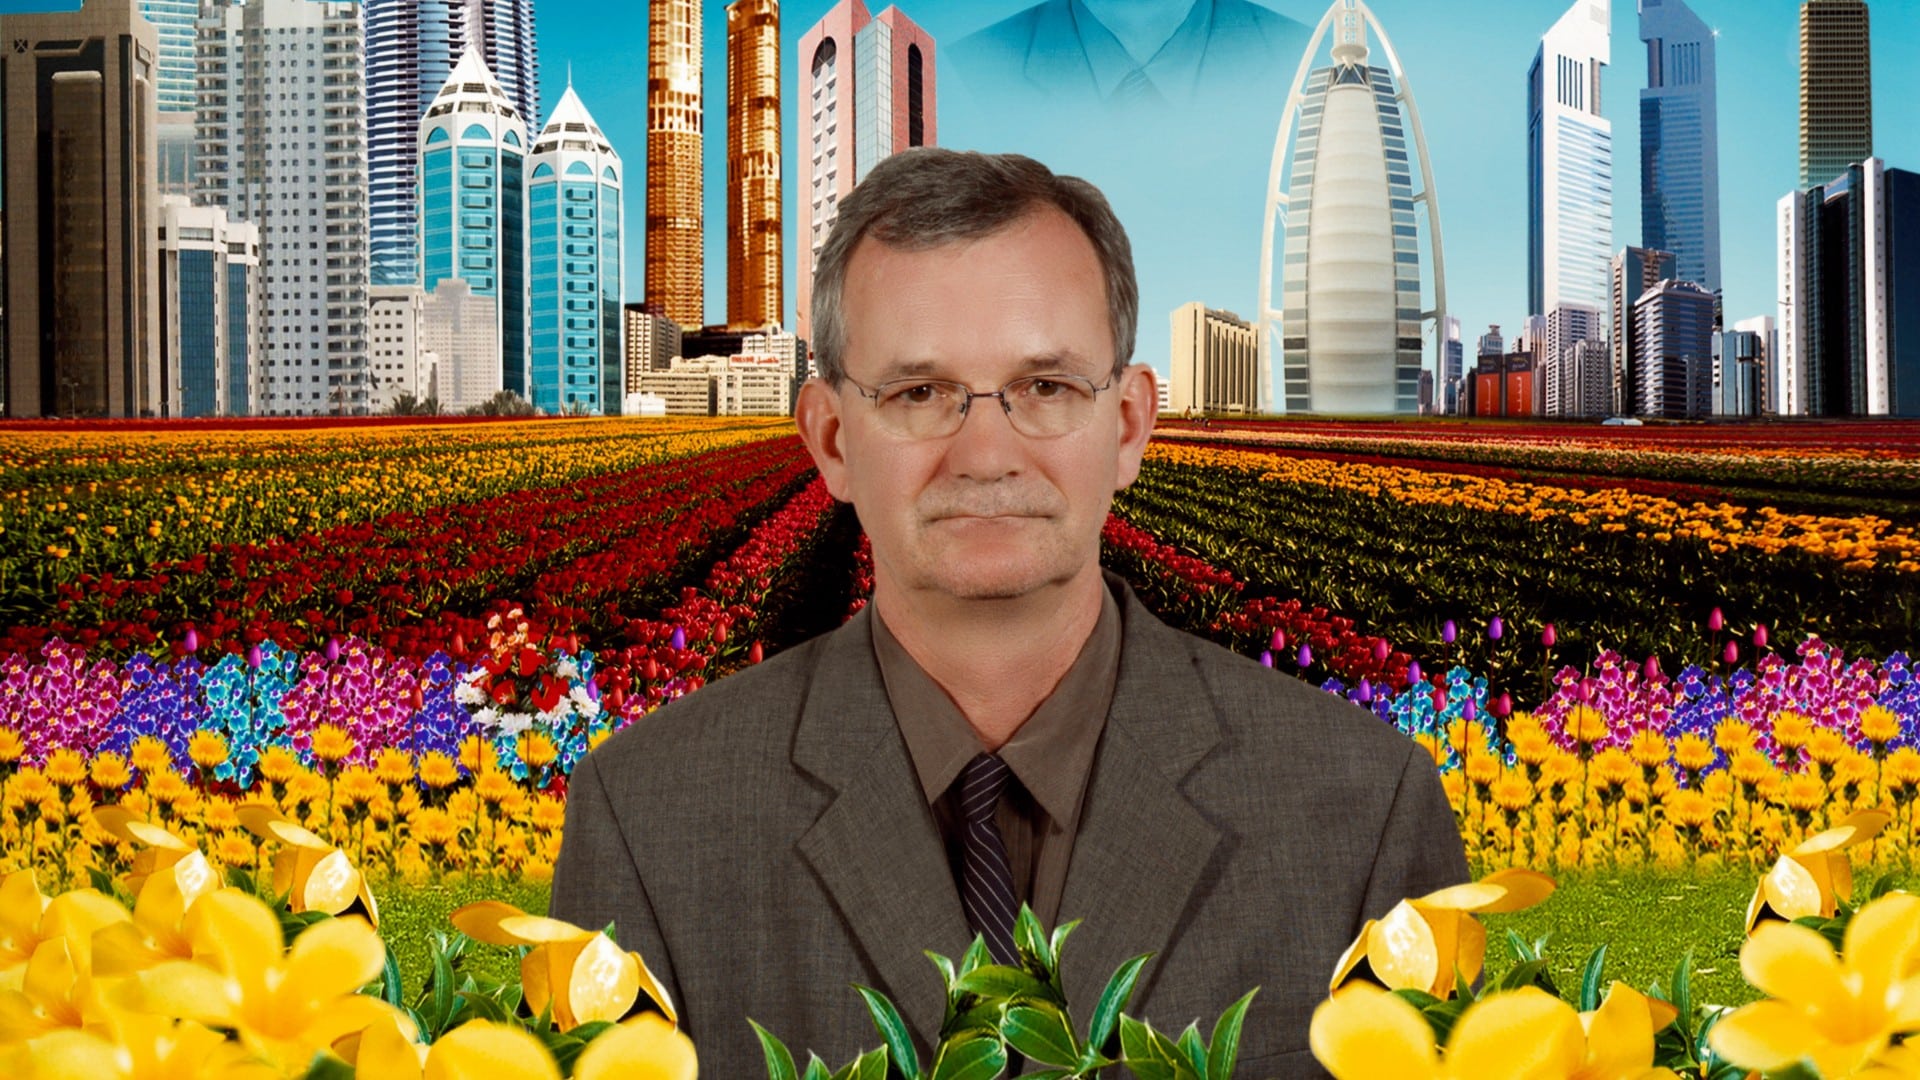 Autoportrait de Martin Parr au milieu d'un champ de fleurs artificielles, avec les tours de Dubai en arrière-plan